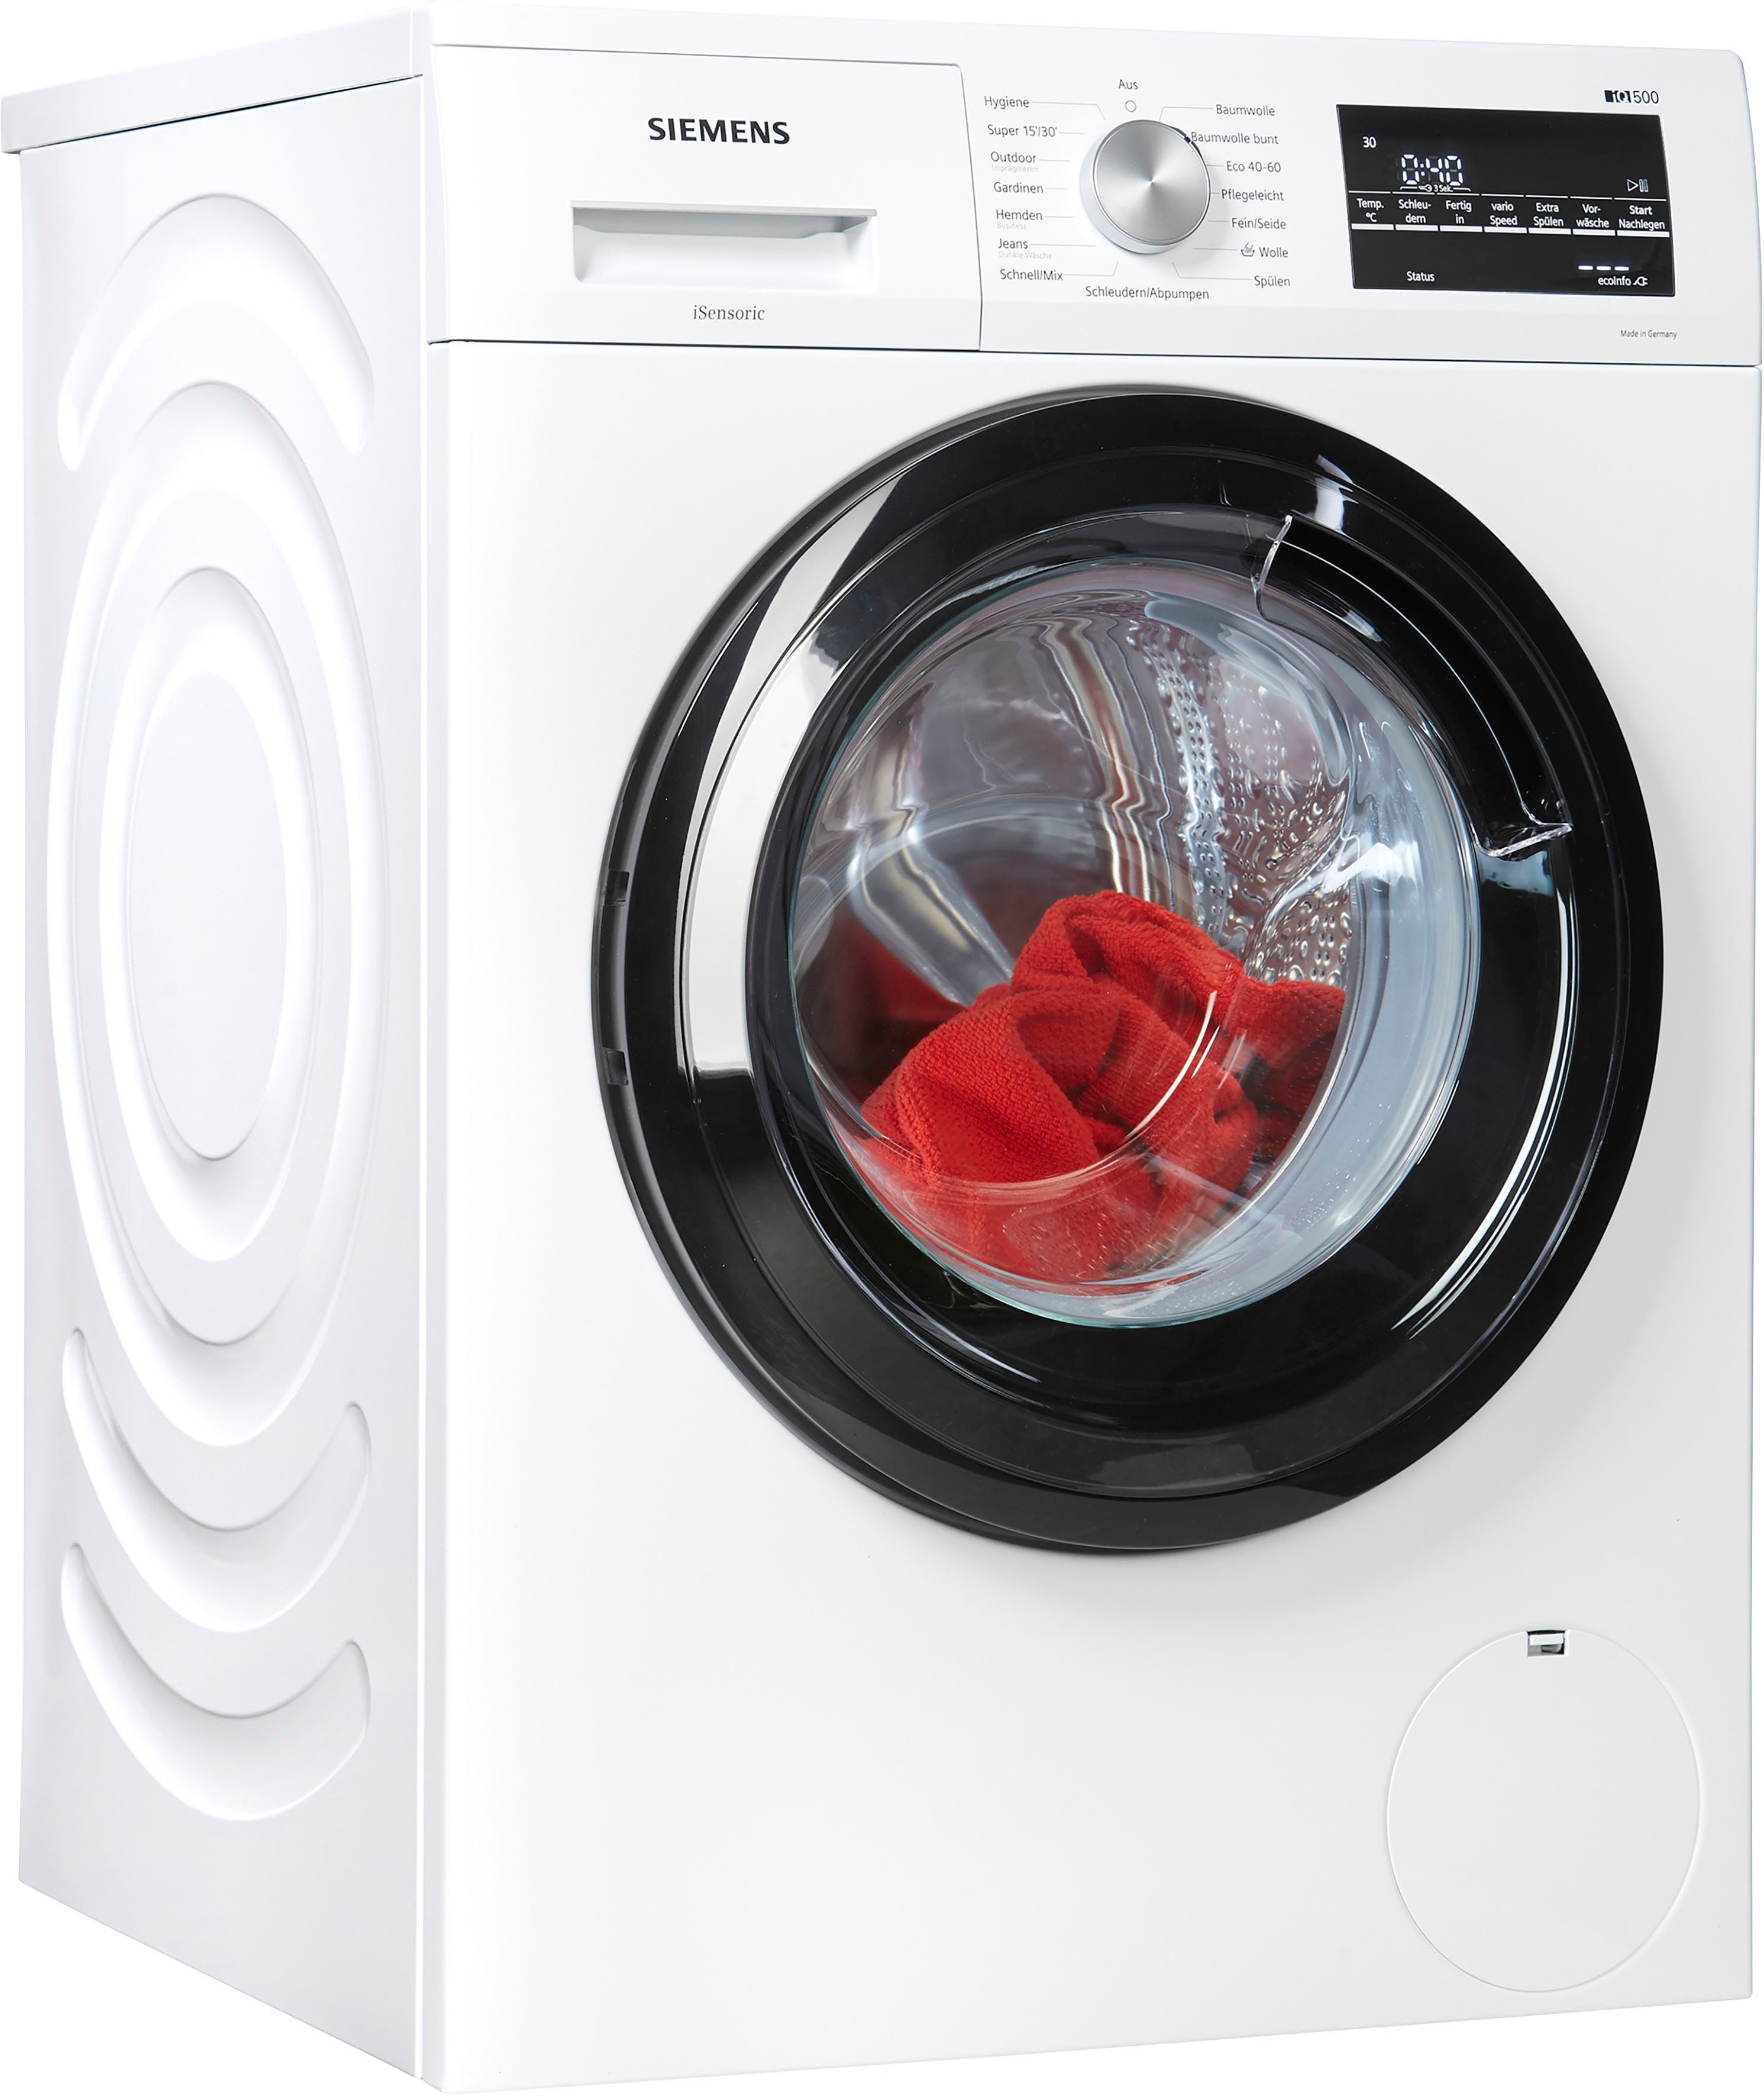 Günstige Waschmaschinen » Bis zu 50% Rabatt | OTTO